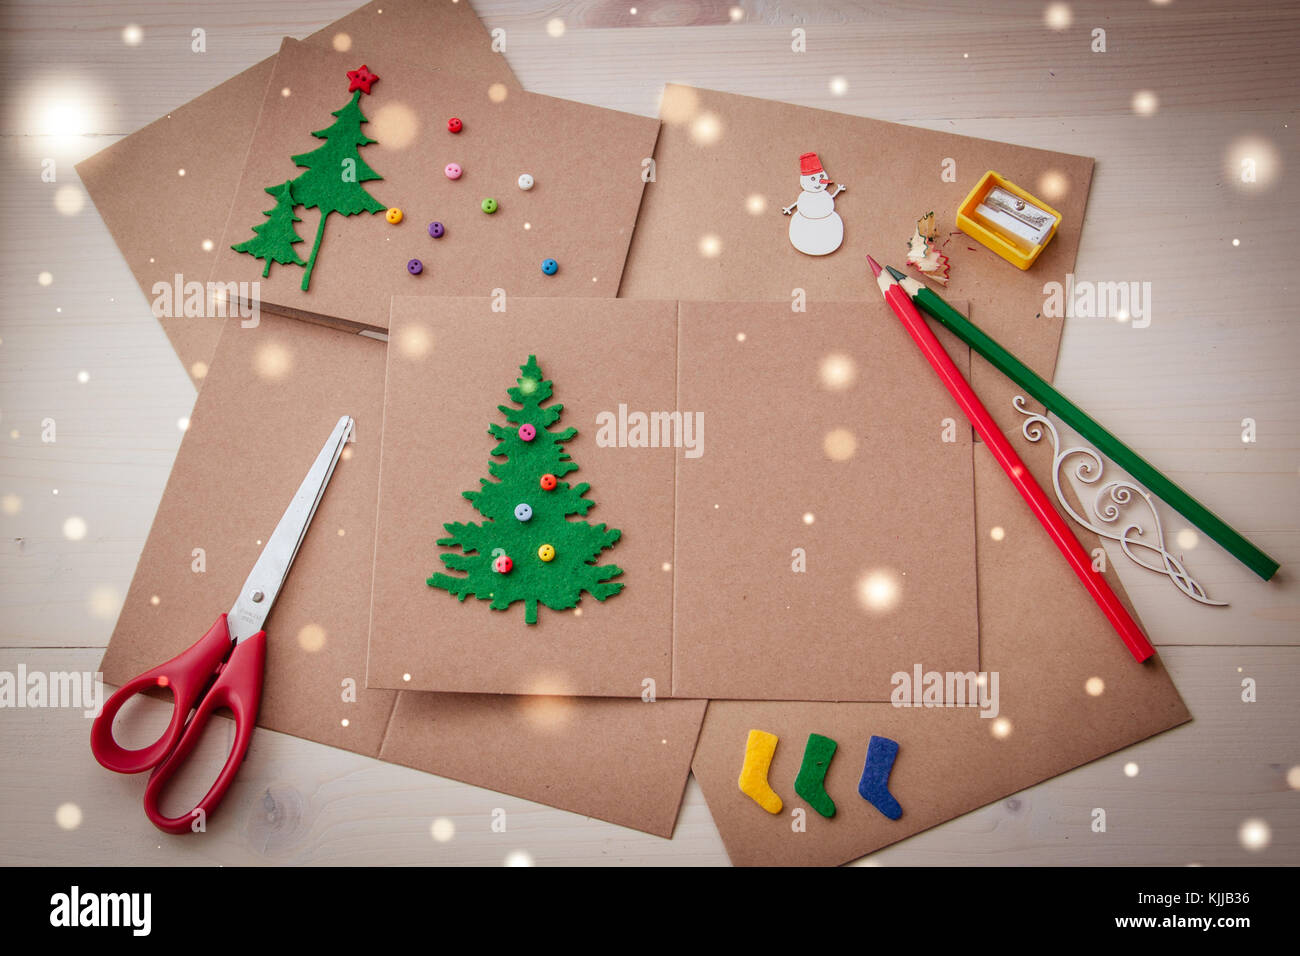 La de tarjetas de Navidad artesanales. Sentí, tijeras, botones, árbol de el desguace de laicos plana Fotografía de stock Alamy